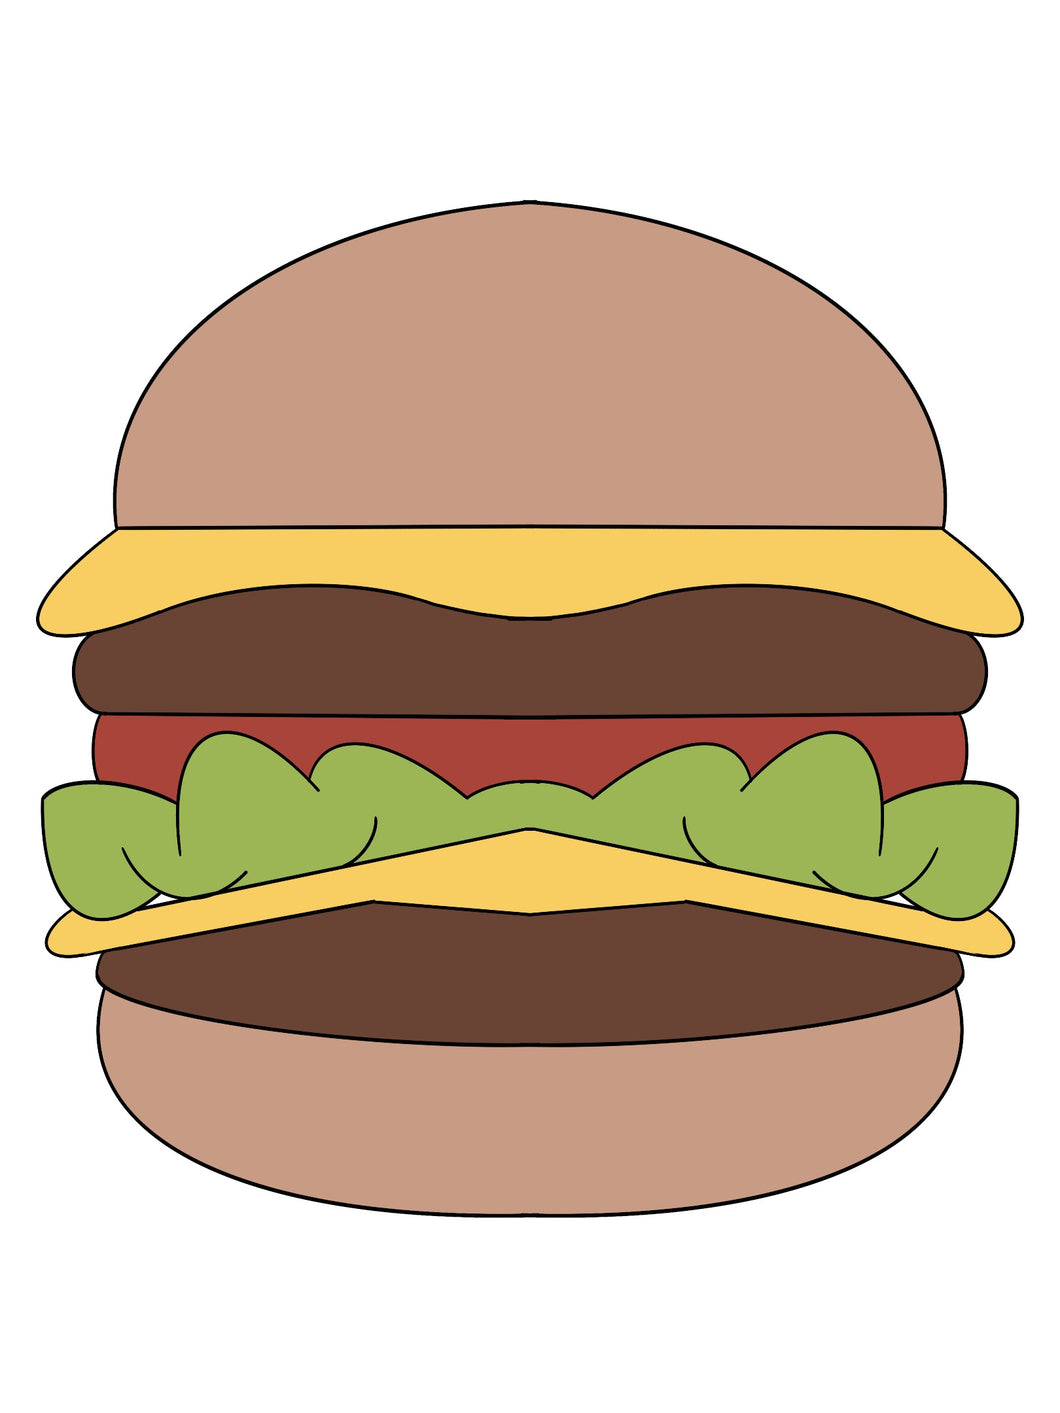 Burger 2